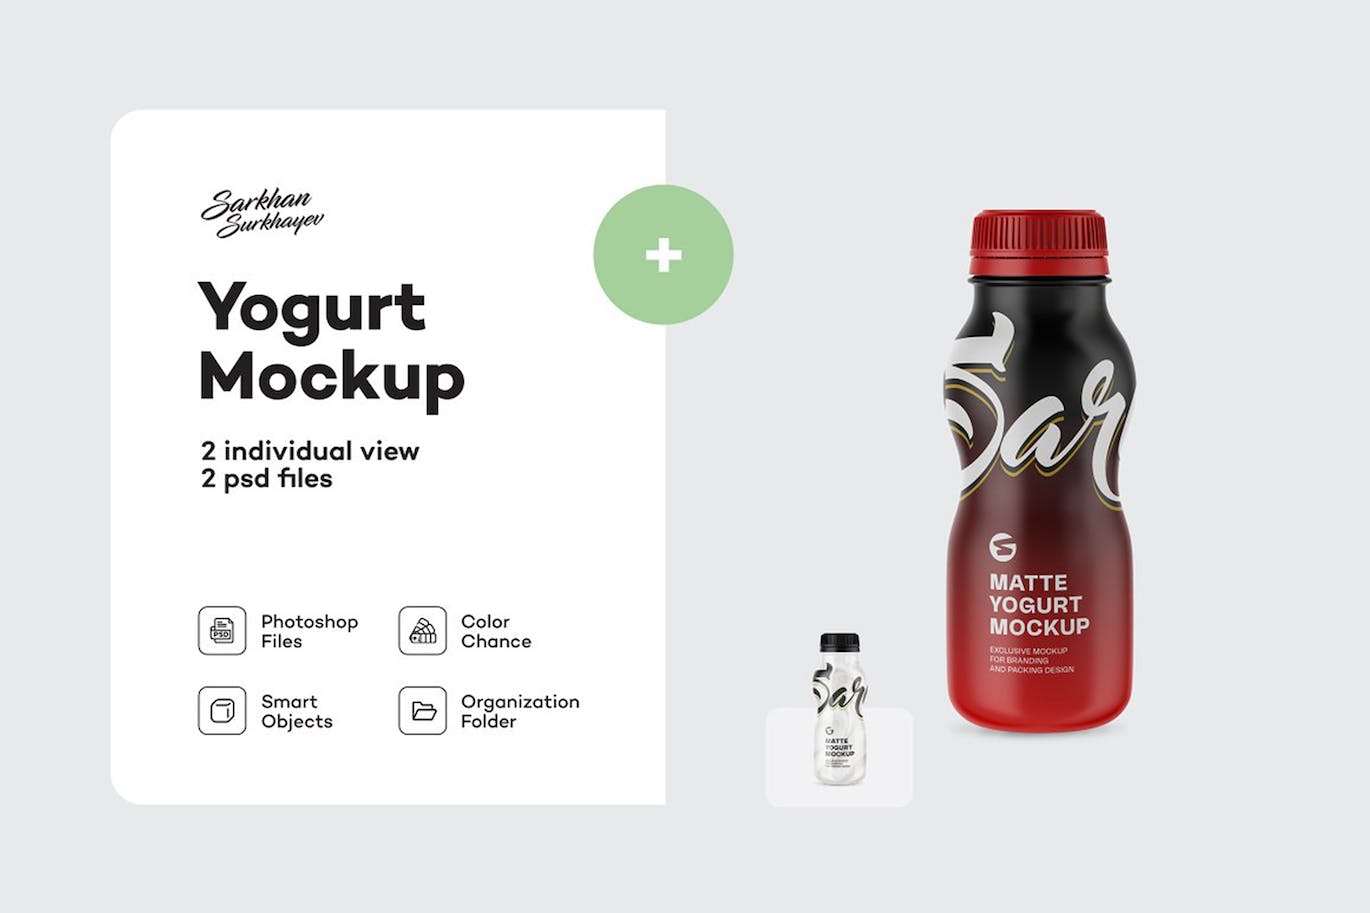 哑光酸奶瓶包装设计样机 Matte Yogurt Bottle Mockup 样机素材 第1张